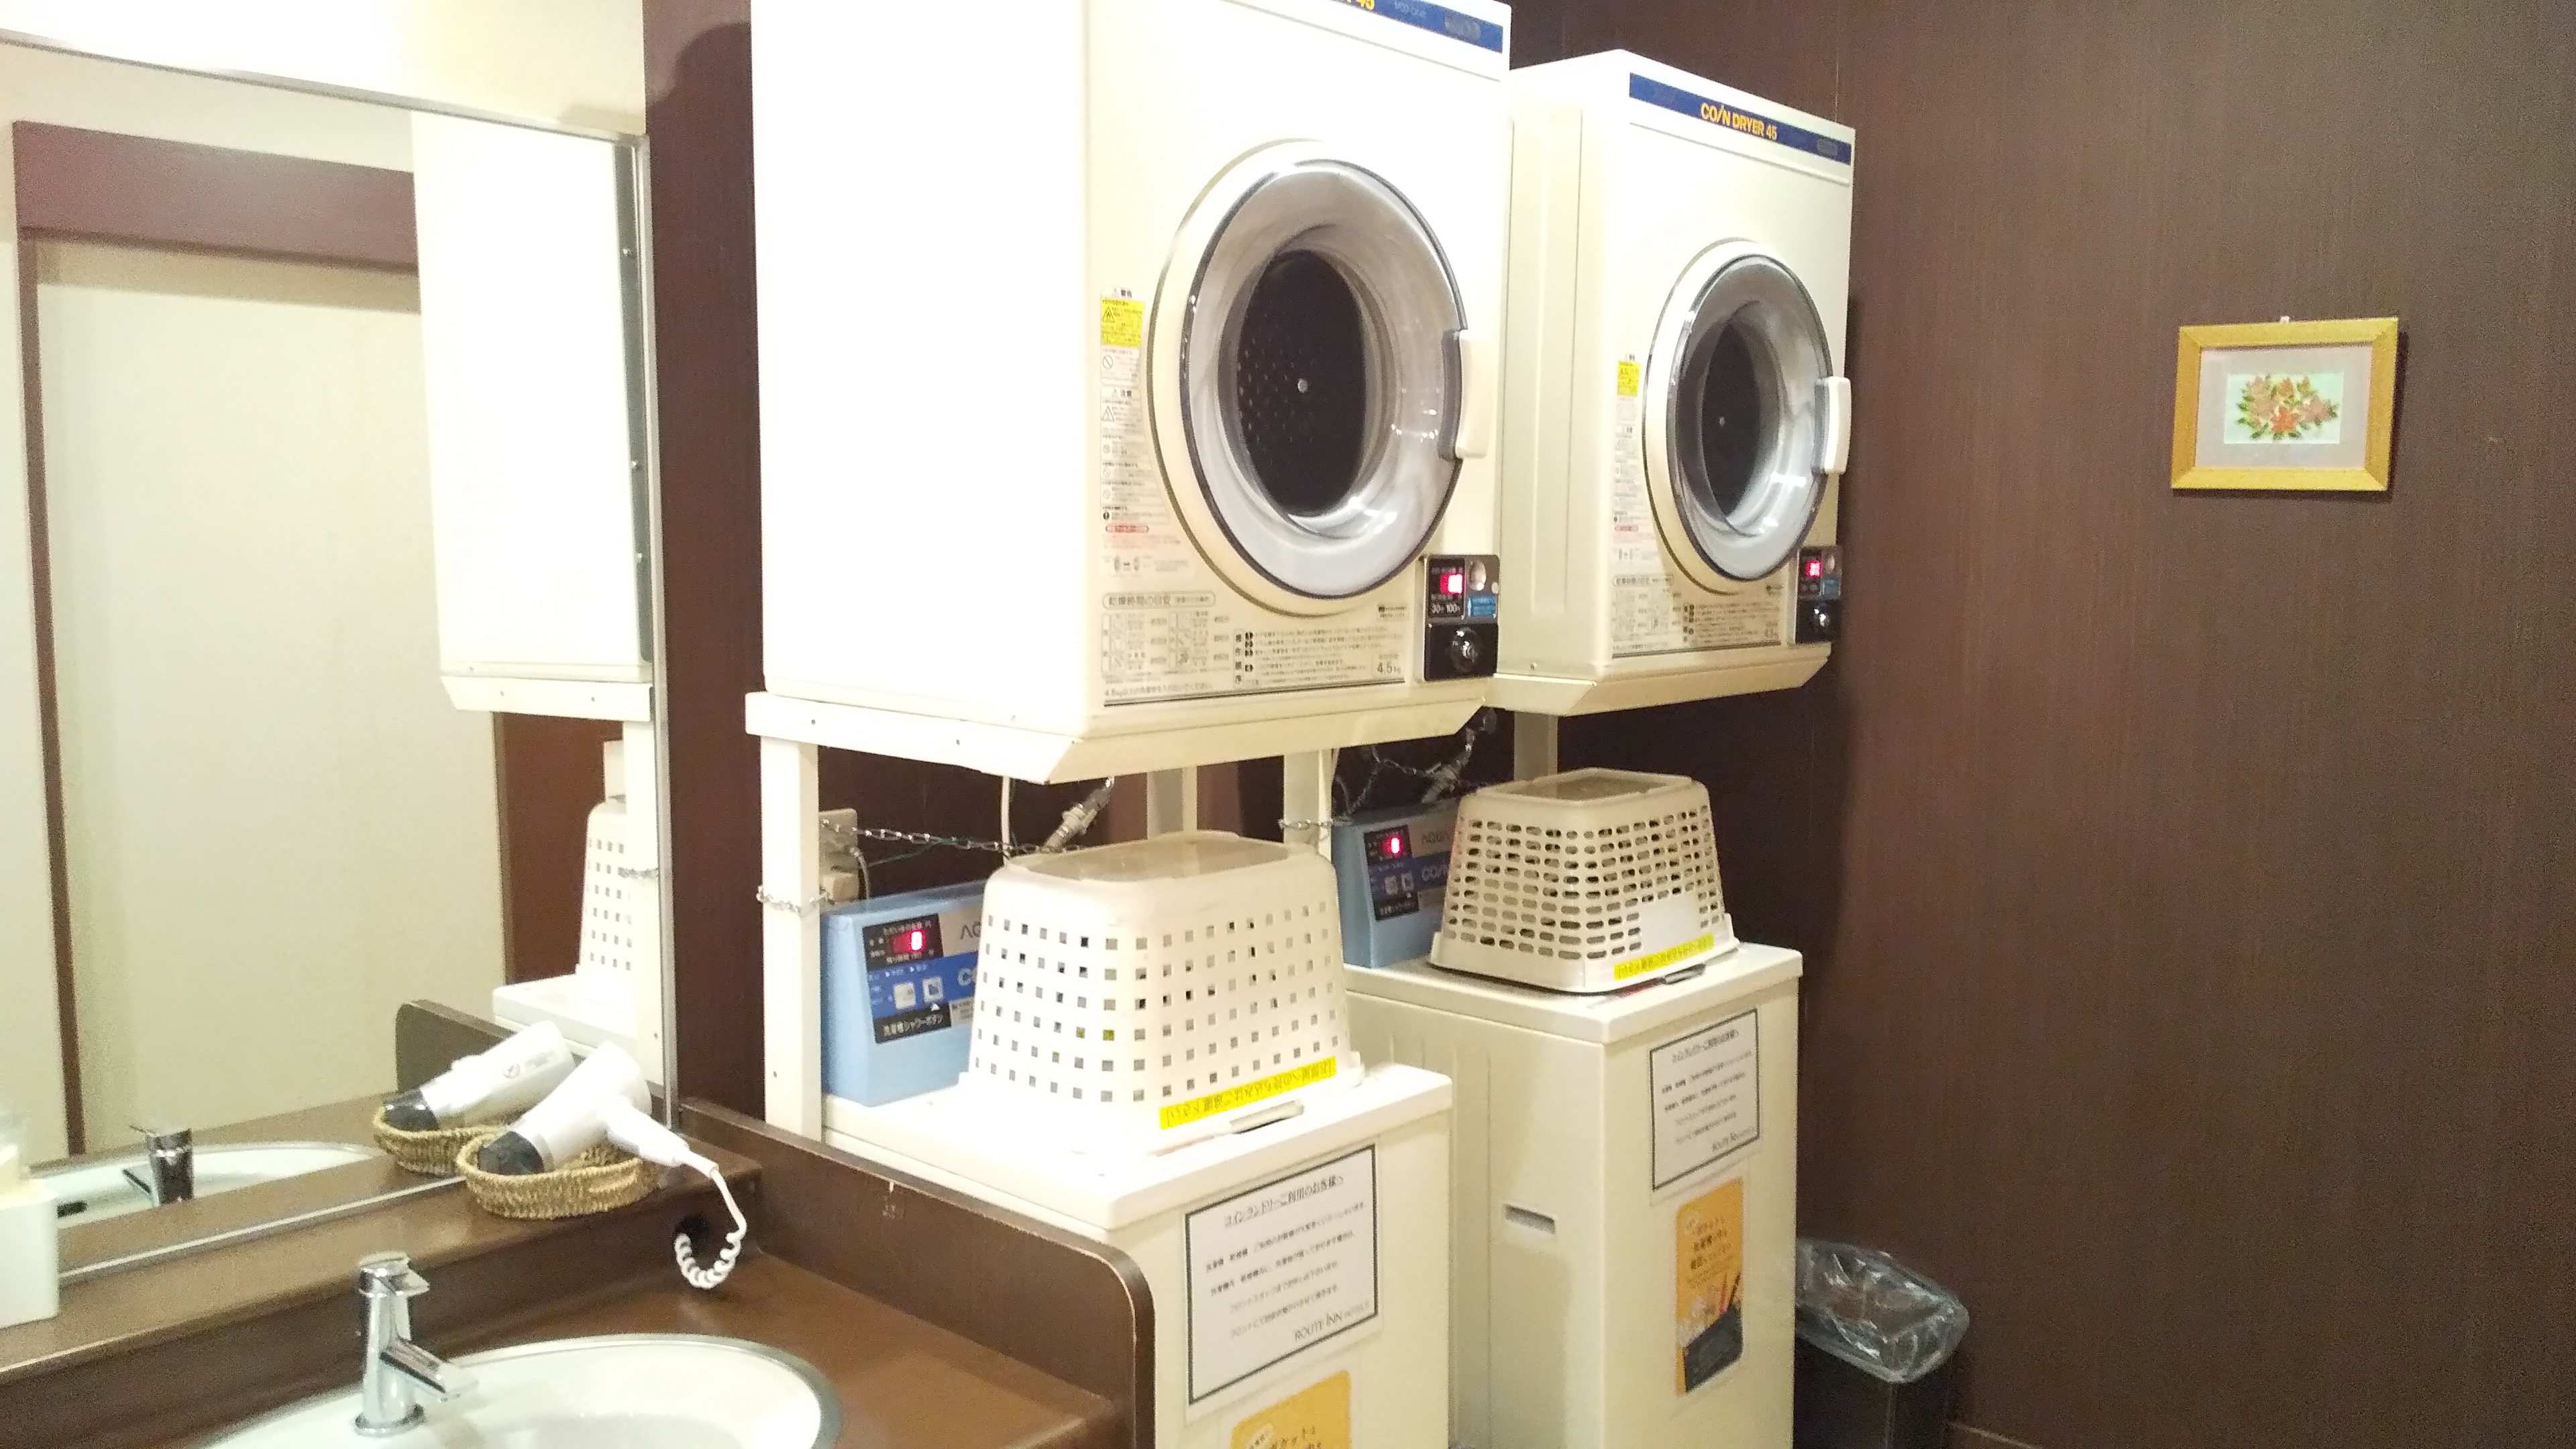 Washing machine/dryer